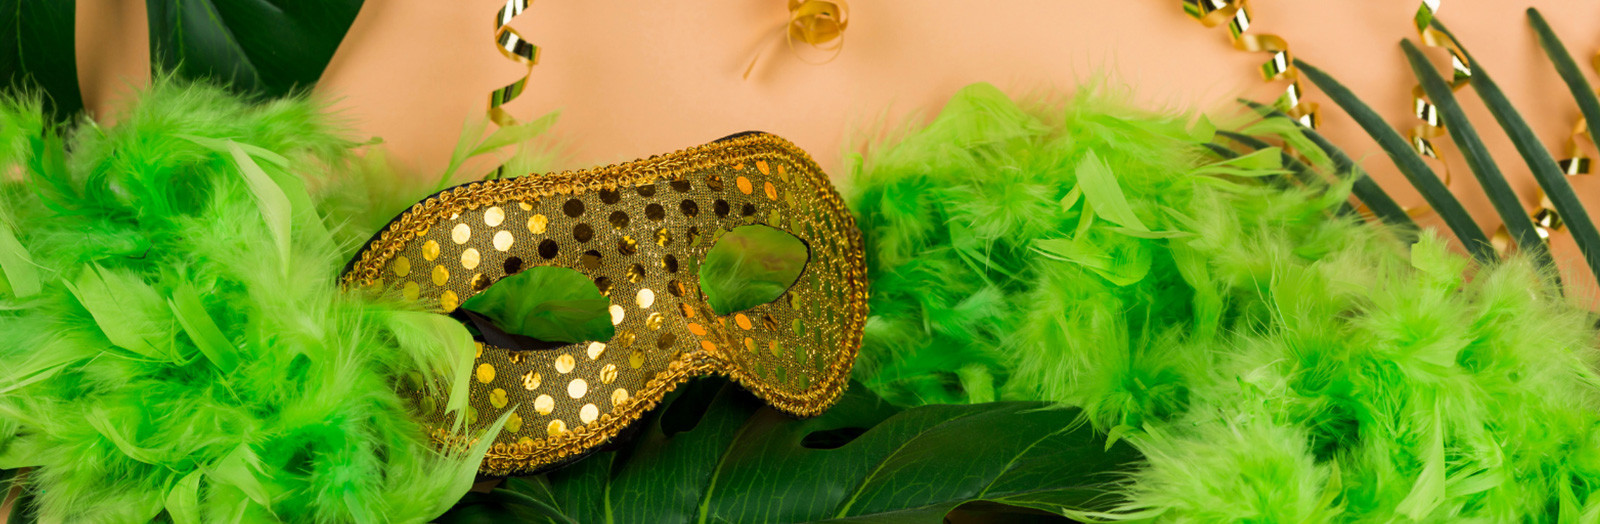 Carnaval : Déguisements, accessoires, maquillage et confettis